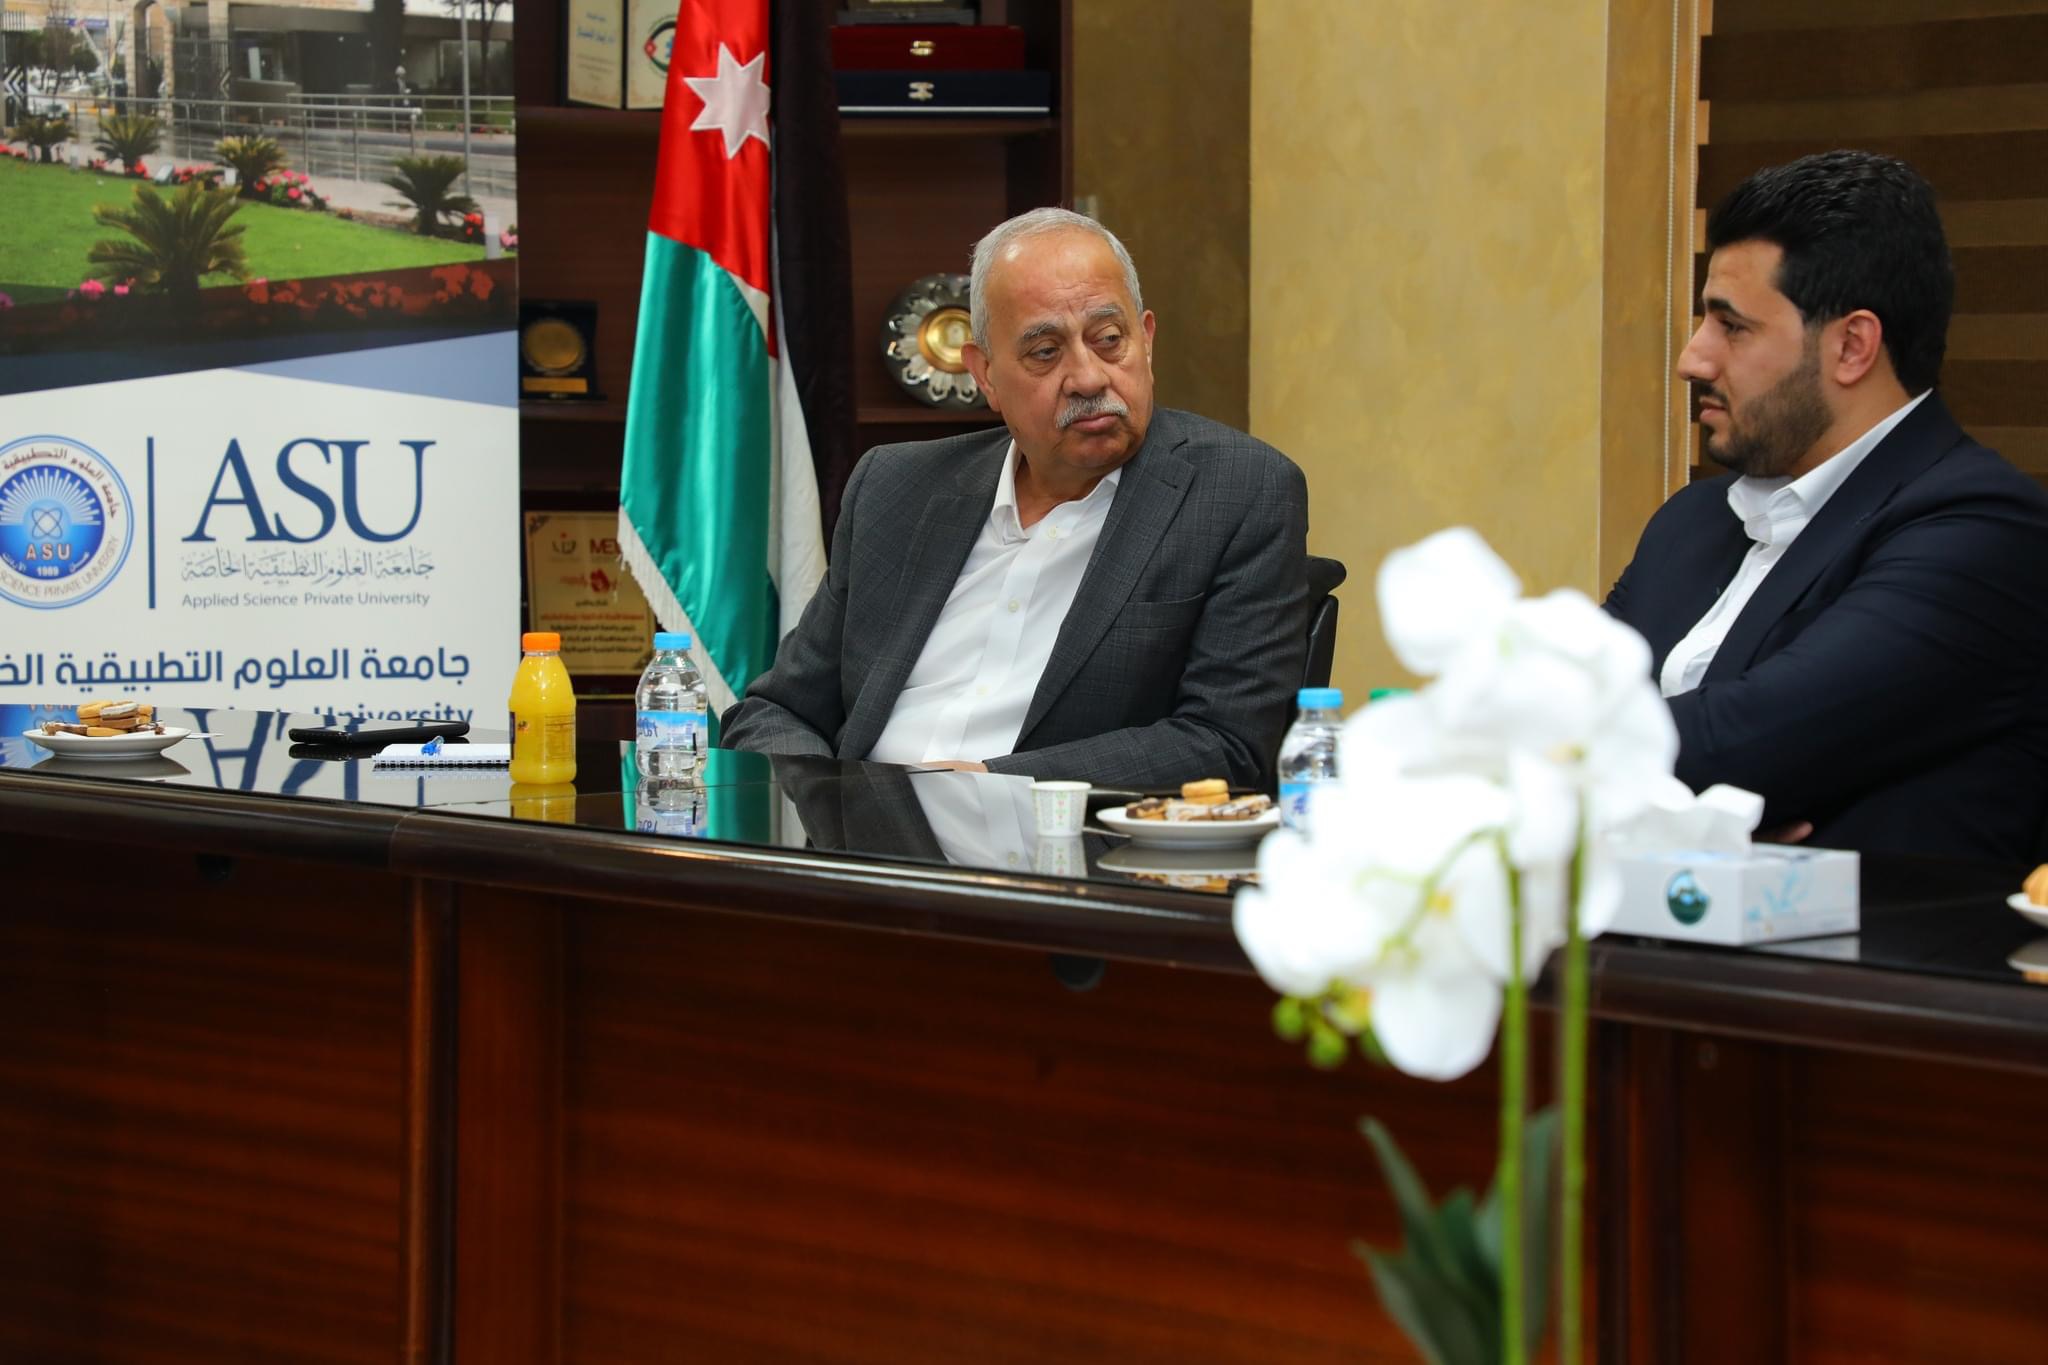 جامعة العلوم التطبيقية الخاصة وغرفة صناعة الأردن توقعان اتفاقية تعاون مشترك لتعزيز التعليم العملي وتطوير الكفاءات المهنية